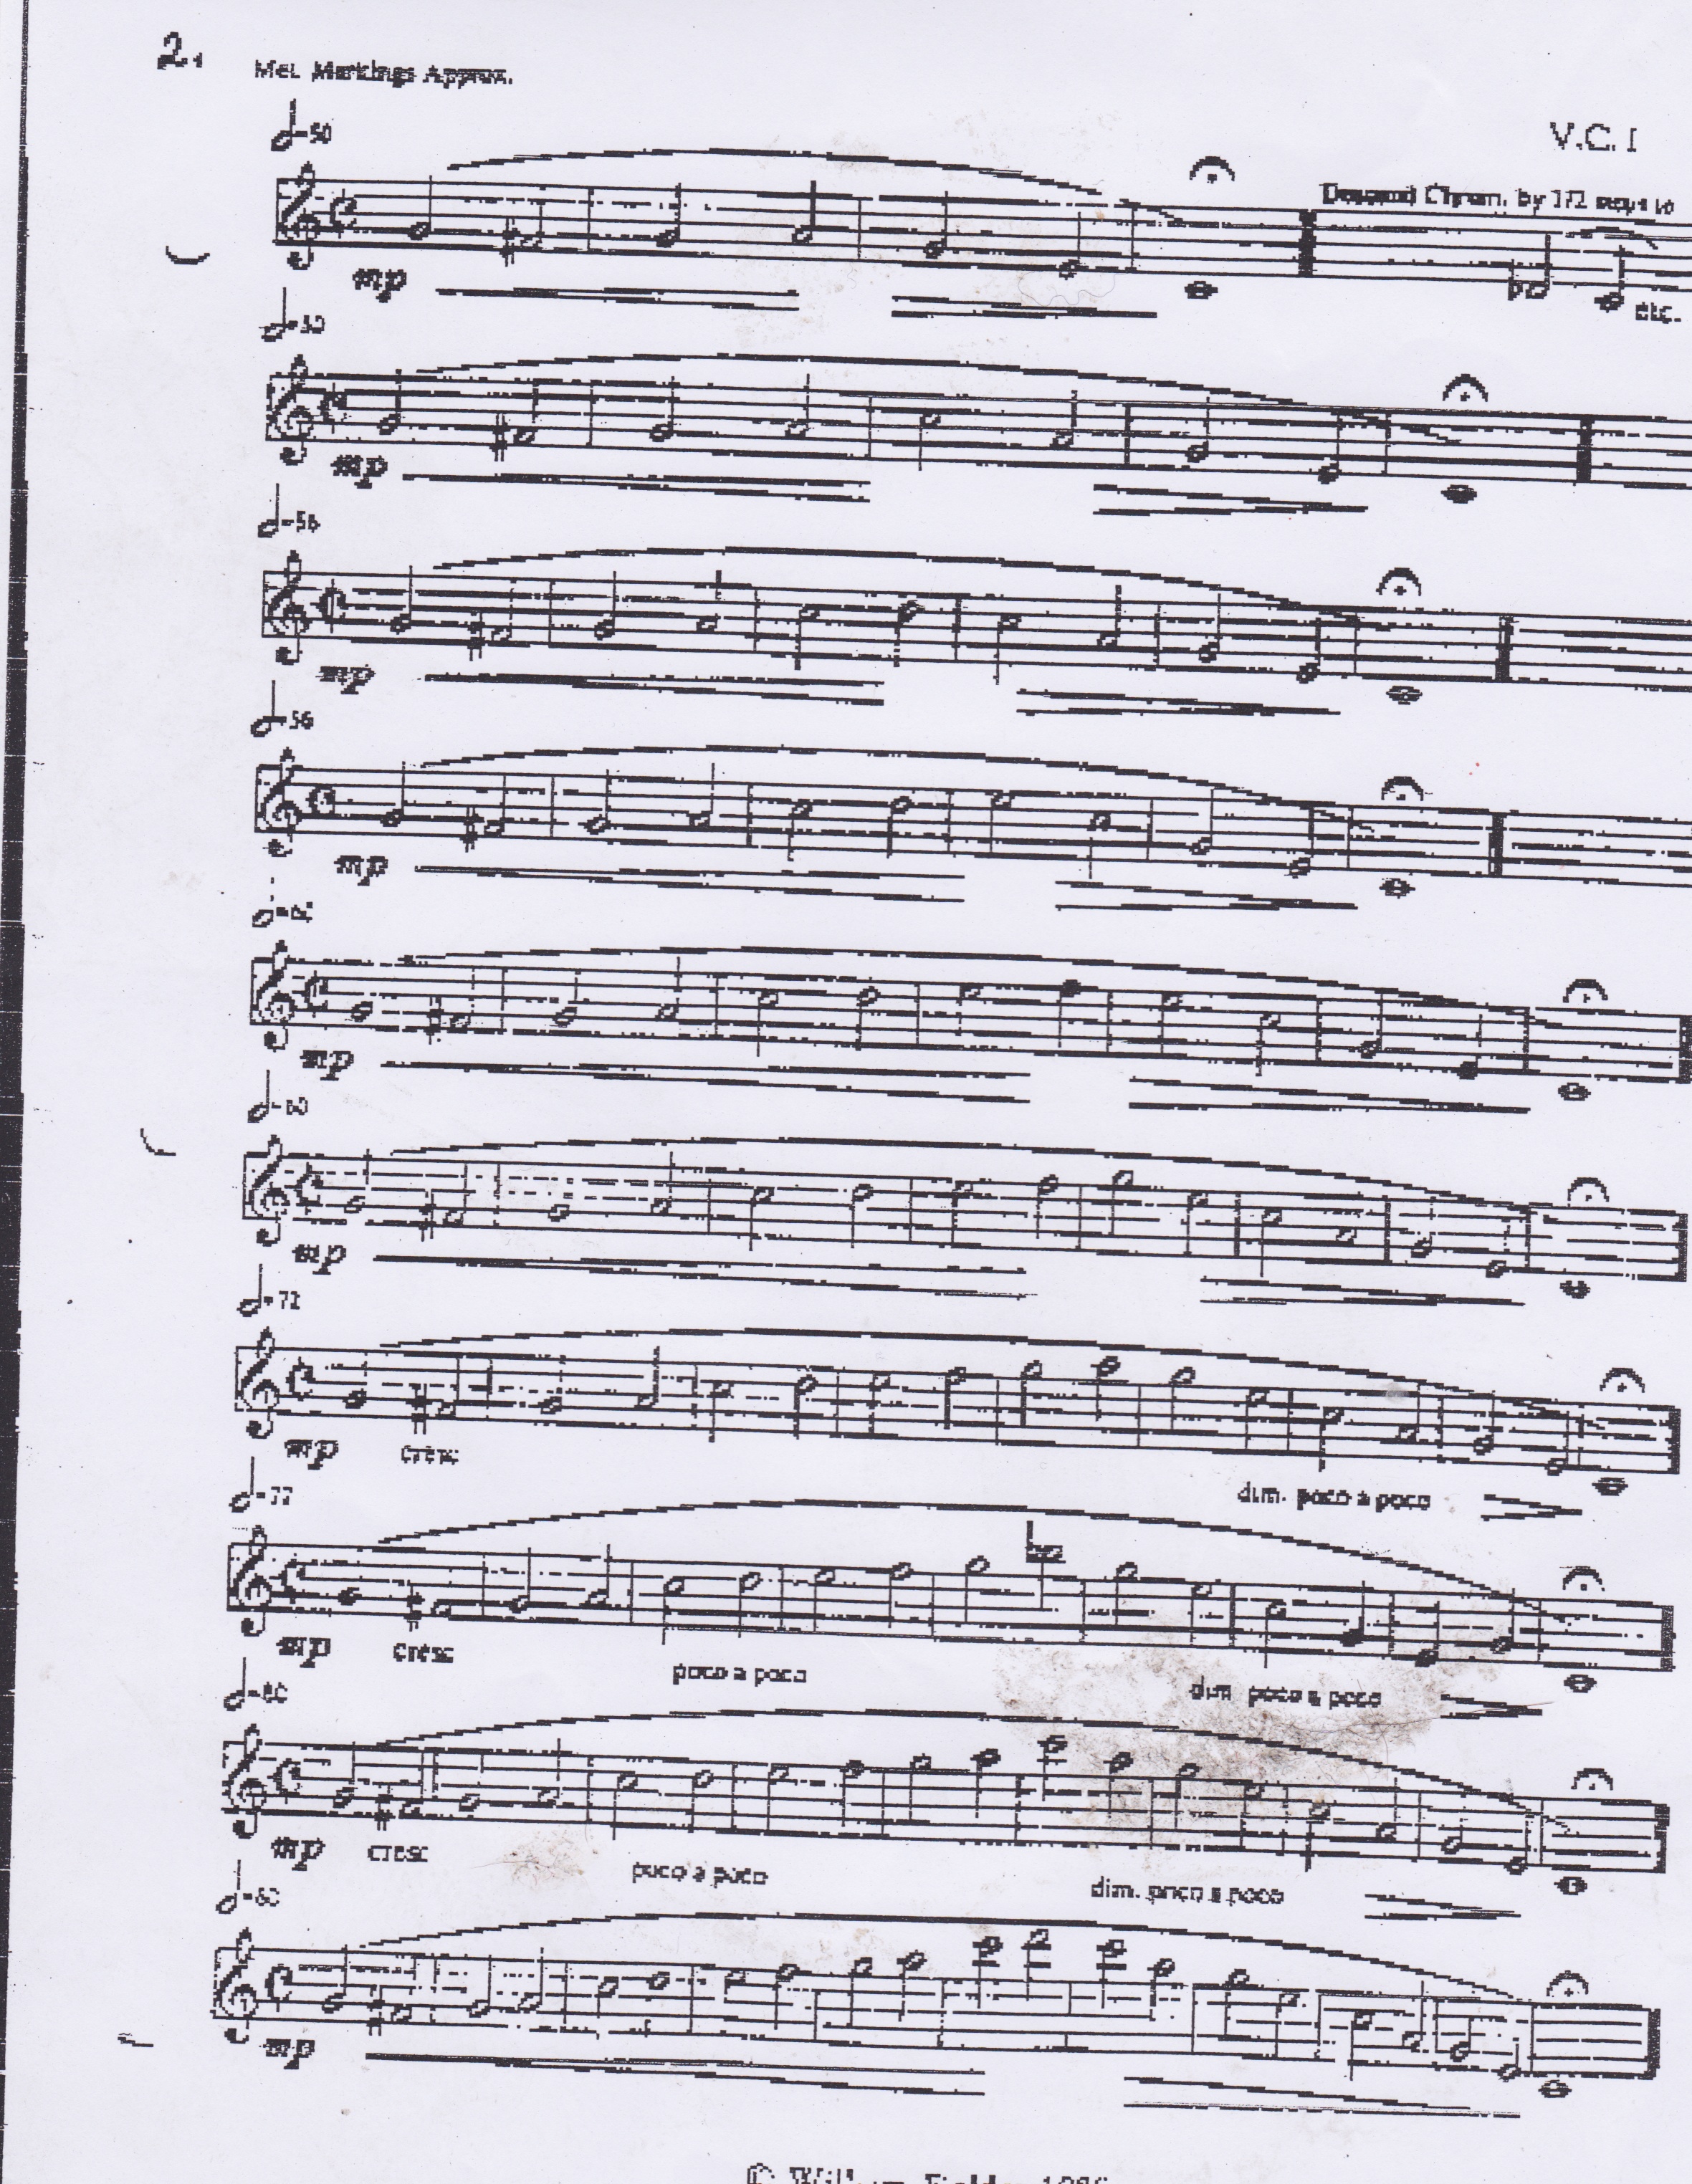 cichowicz trumpet flow studies